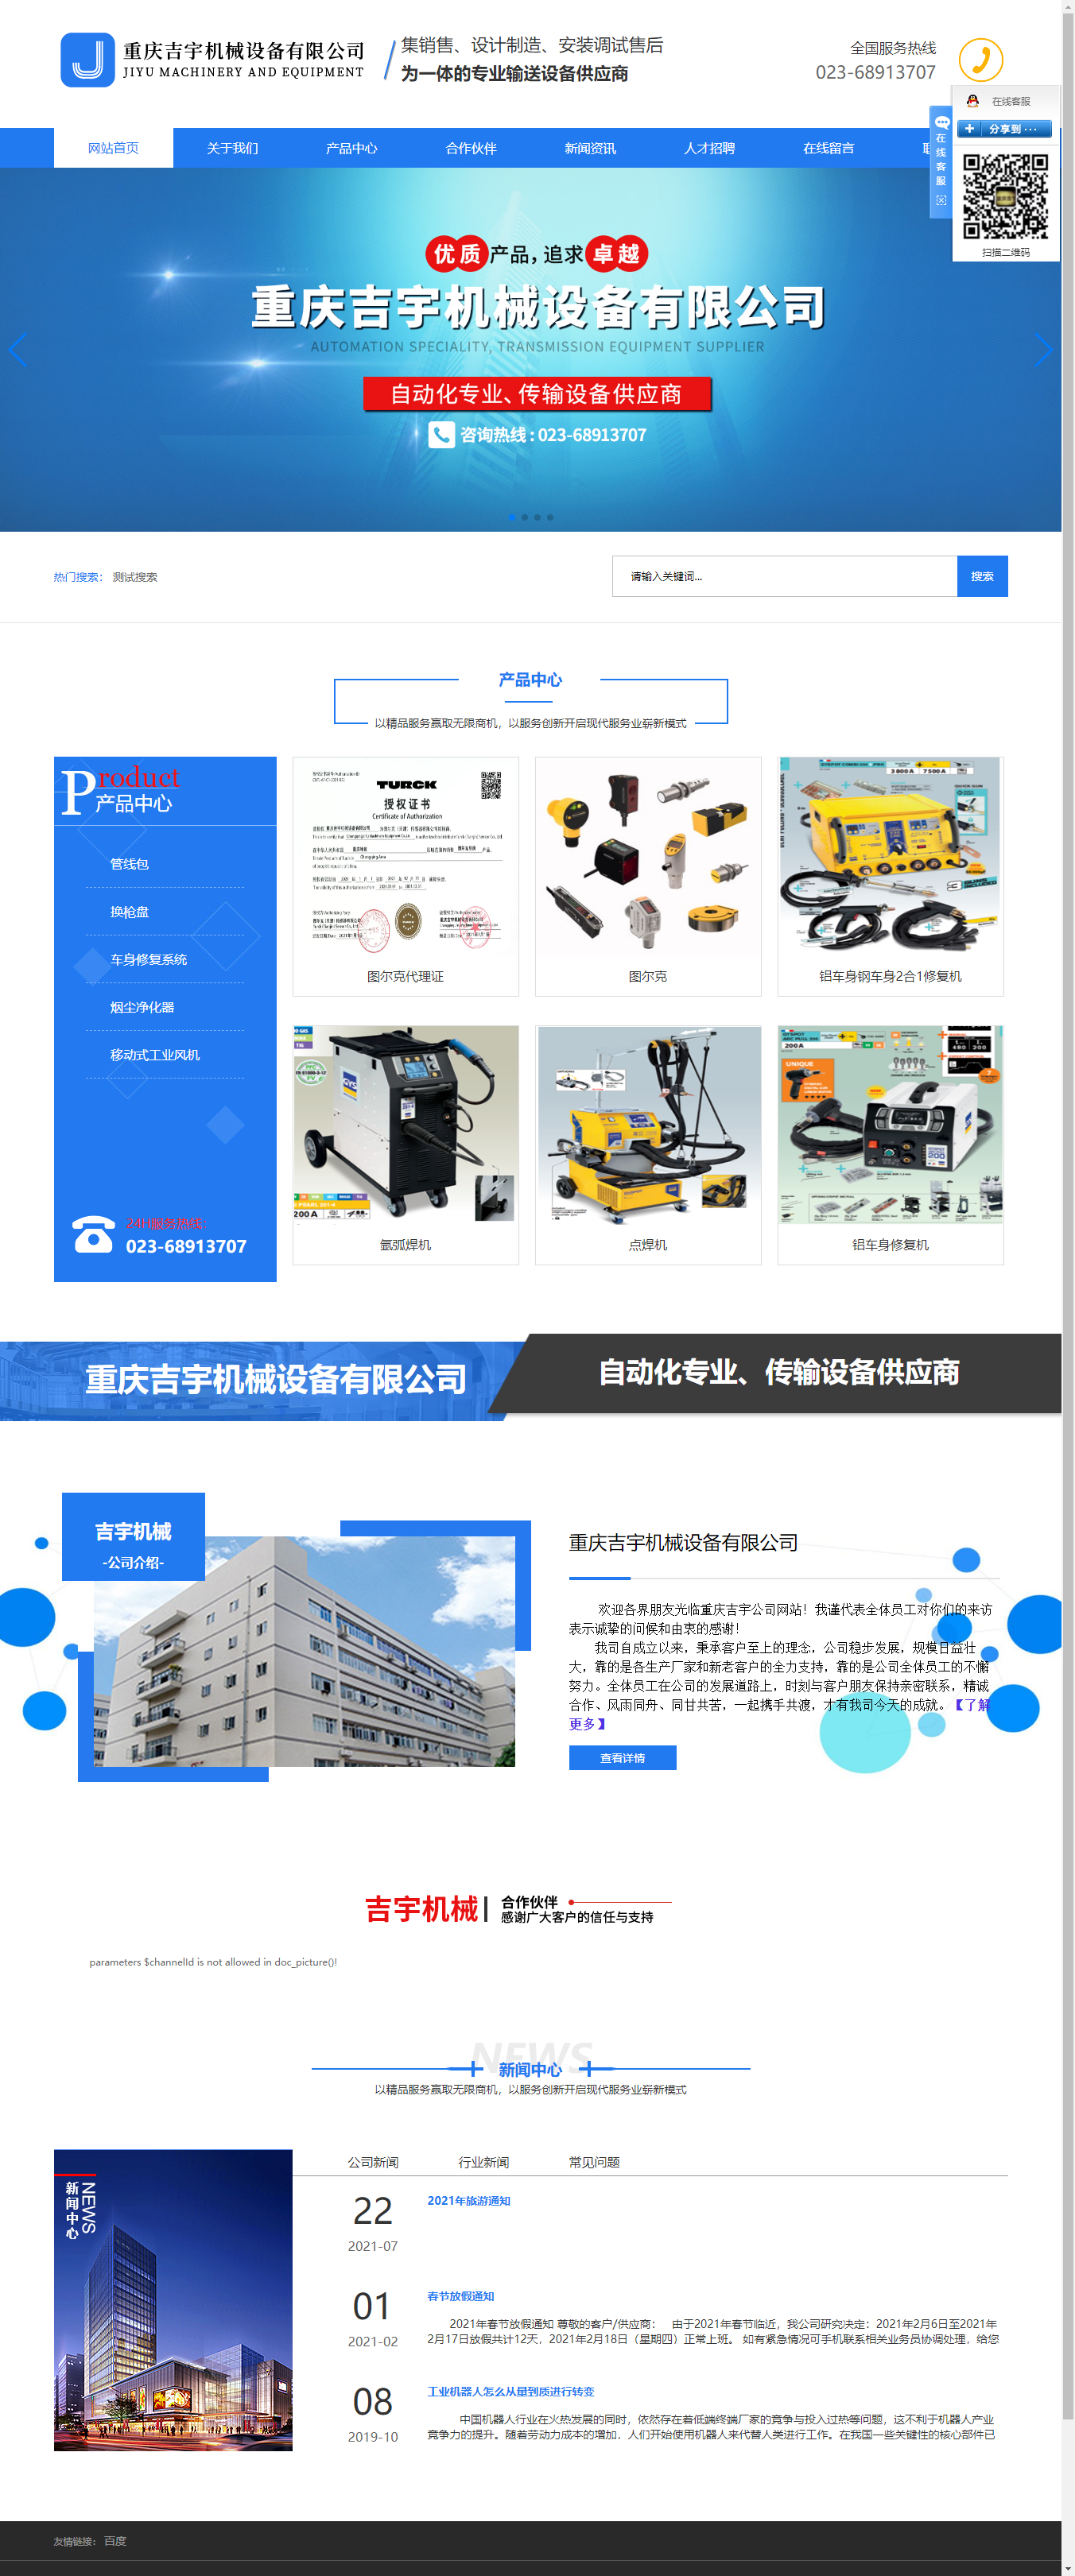 重庆吉宇机械设备有限公司网站案例